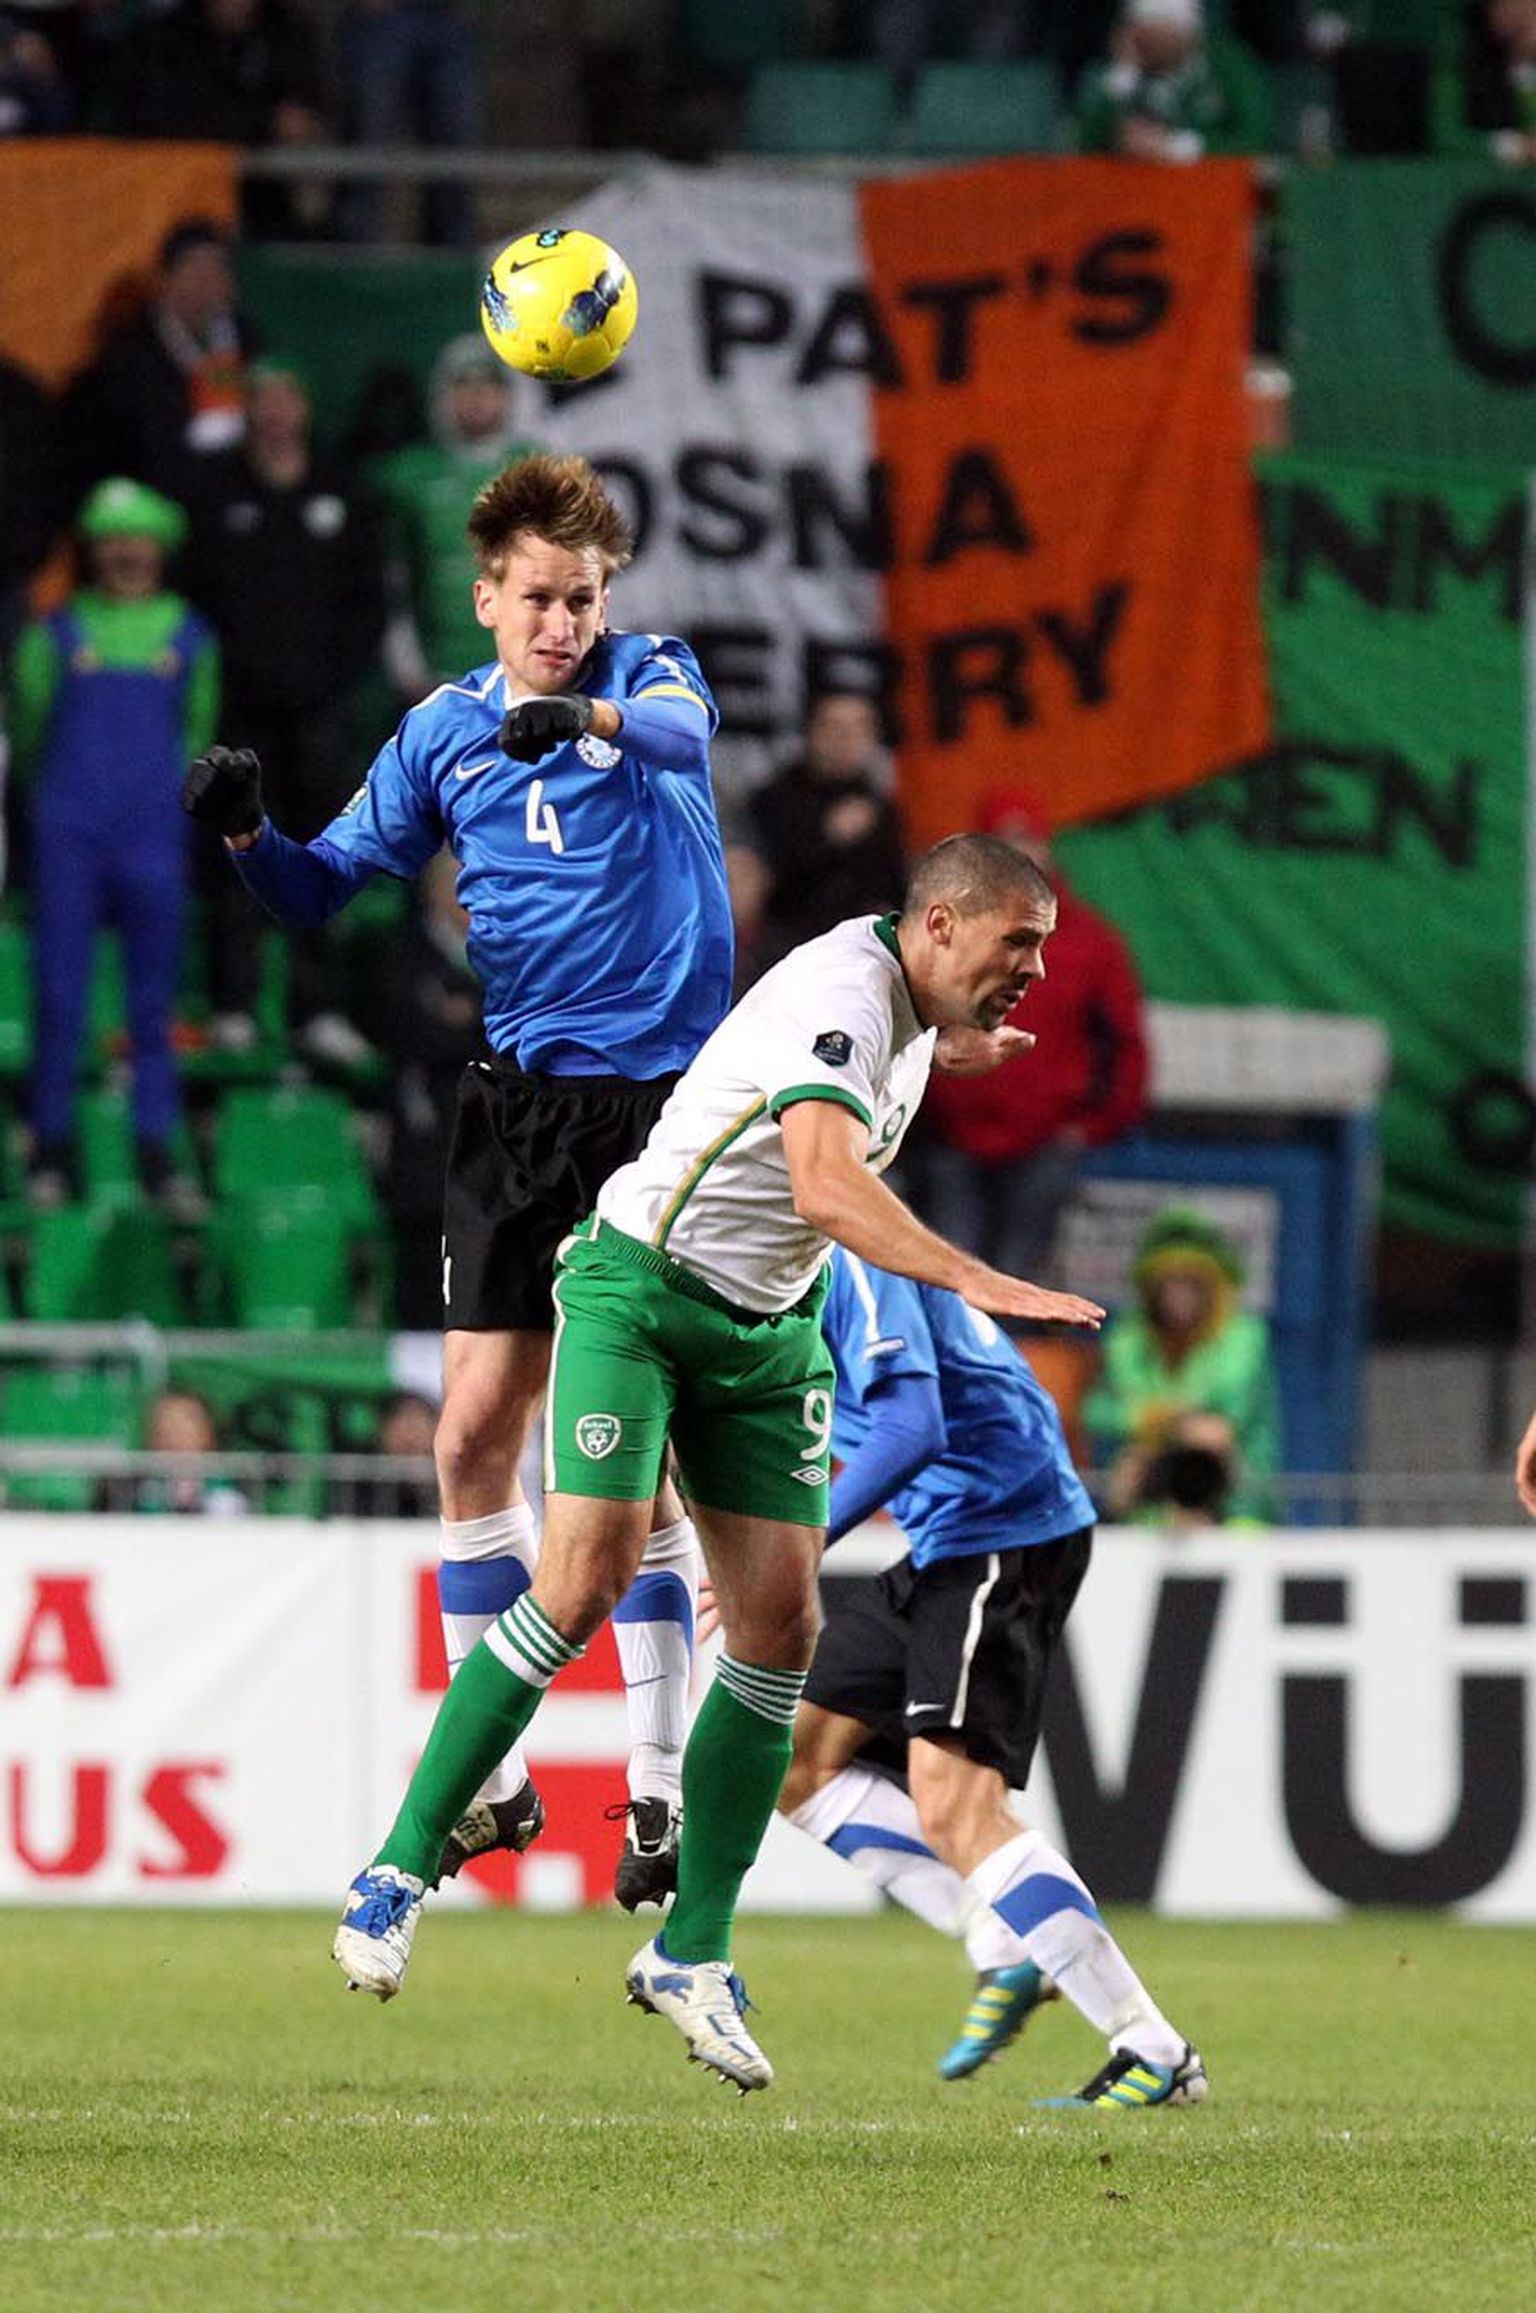 Eesti jalgpallikoondist on Raio Piiroja (nr 4) võimaluse korral alati aidanud, kuid paraku on mängudes saadud vigastused toonud kaasa mängupause klubisärgis.